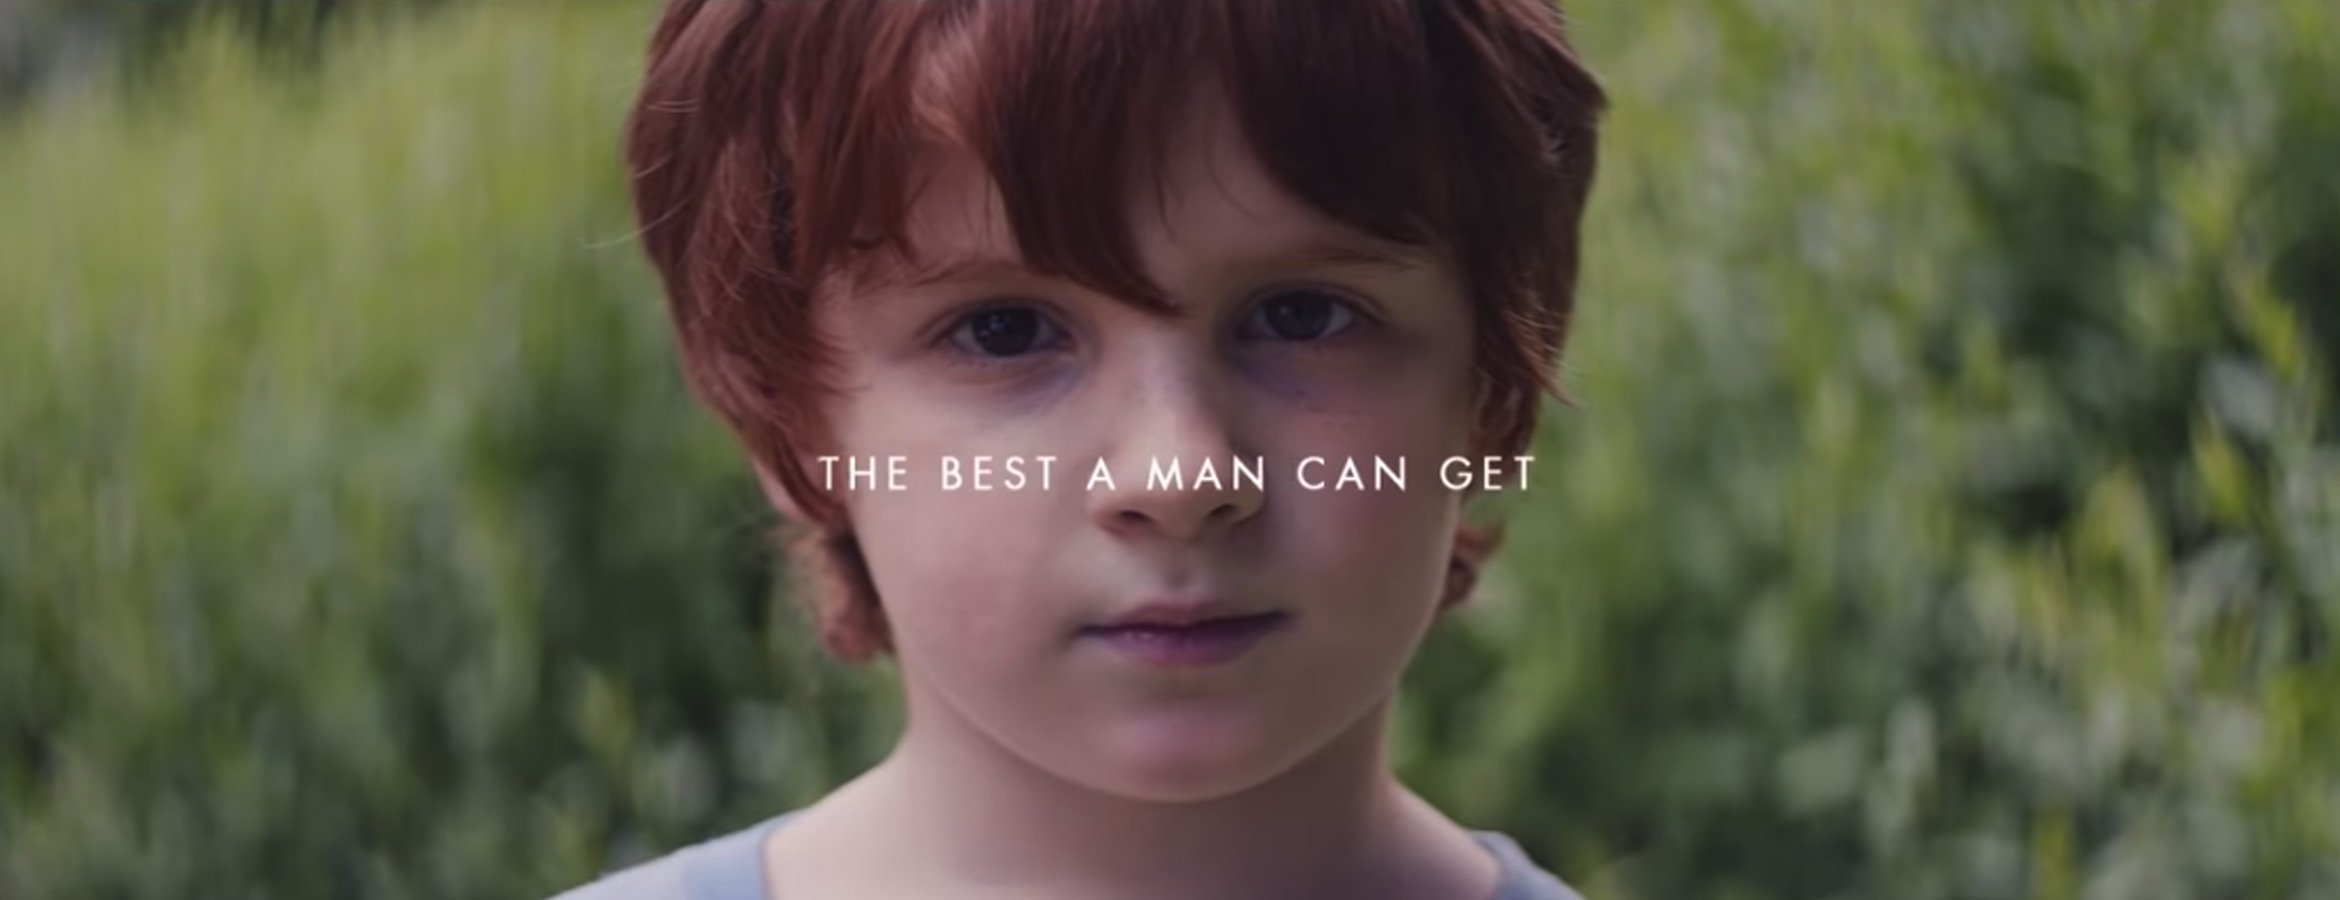 La nouvelle campagne de Gillette fait polémique en rasant la vieille barbe des clichés masculins